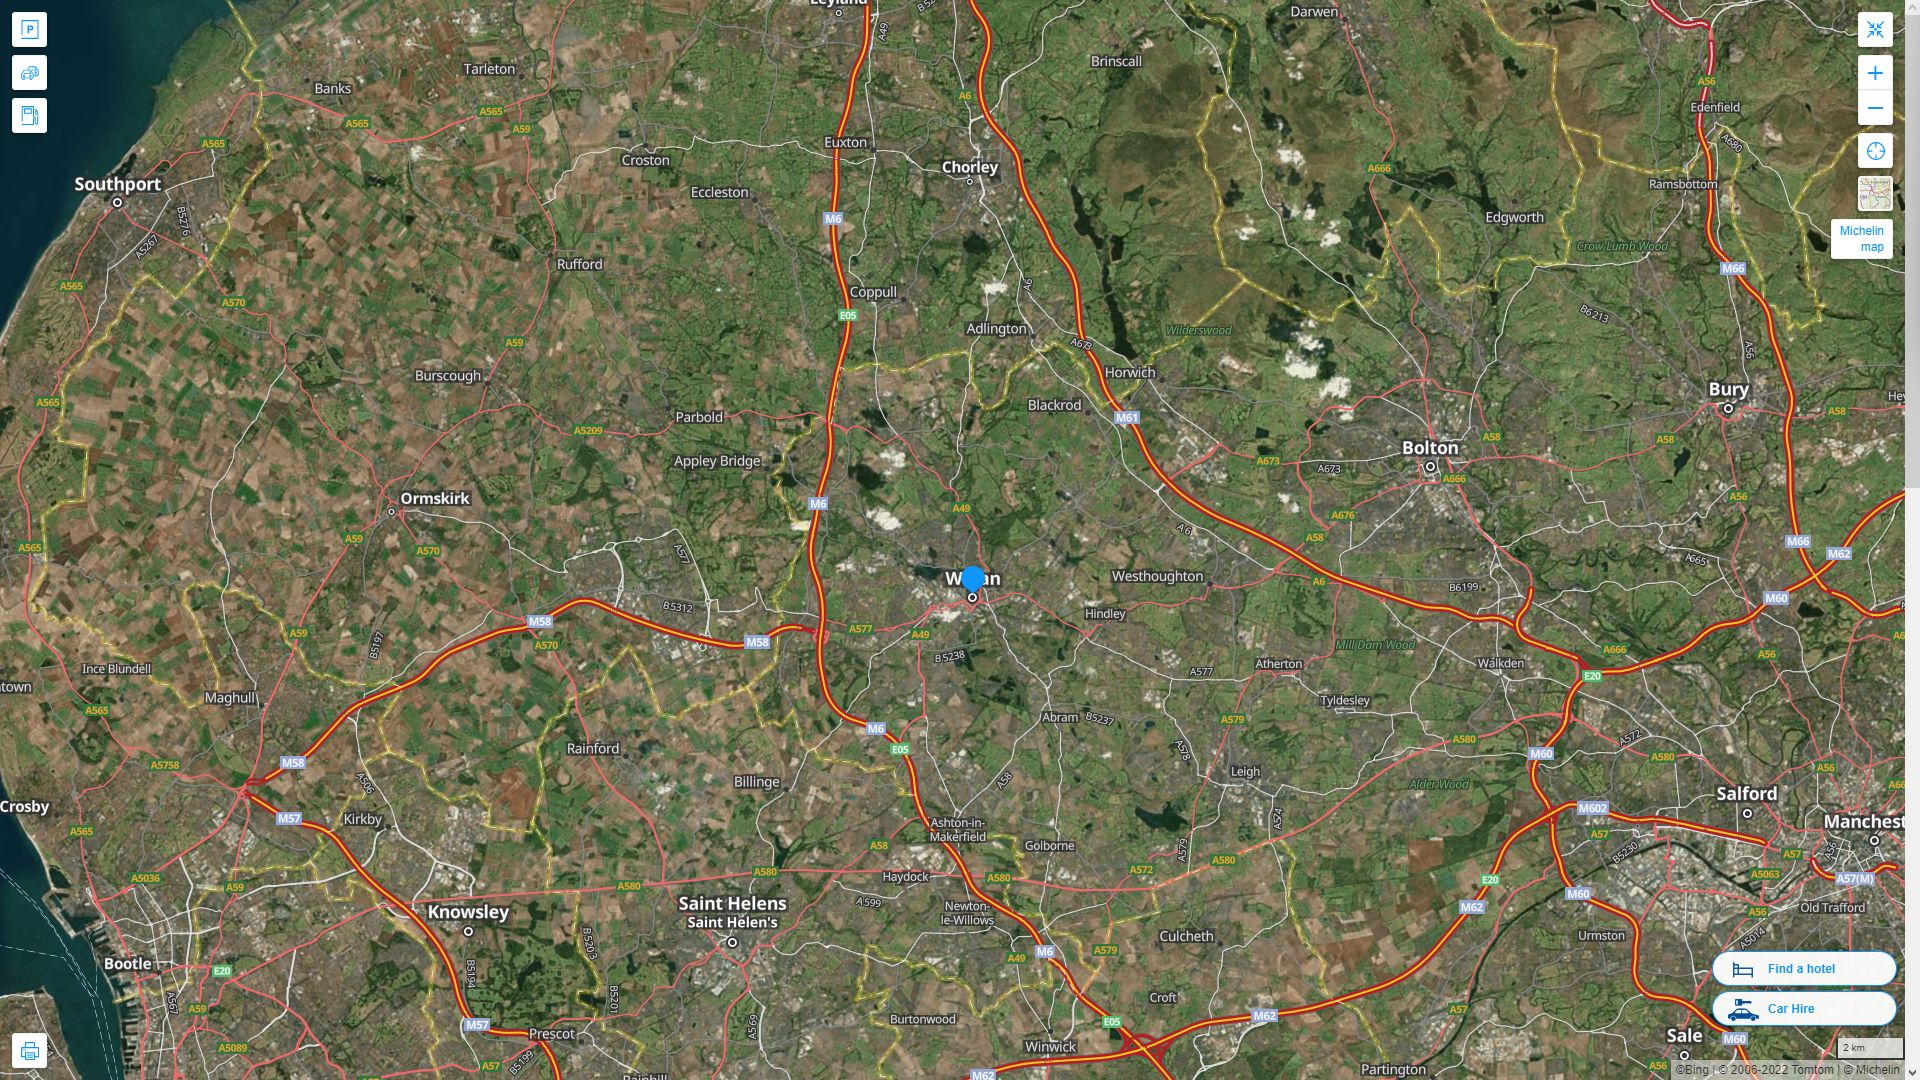 Wigan Royaume Uni Autoroute et carte routiere avec vue satellite